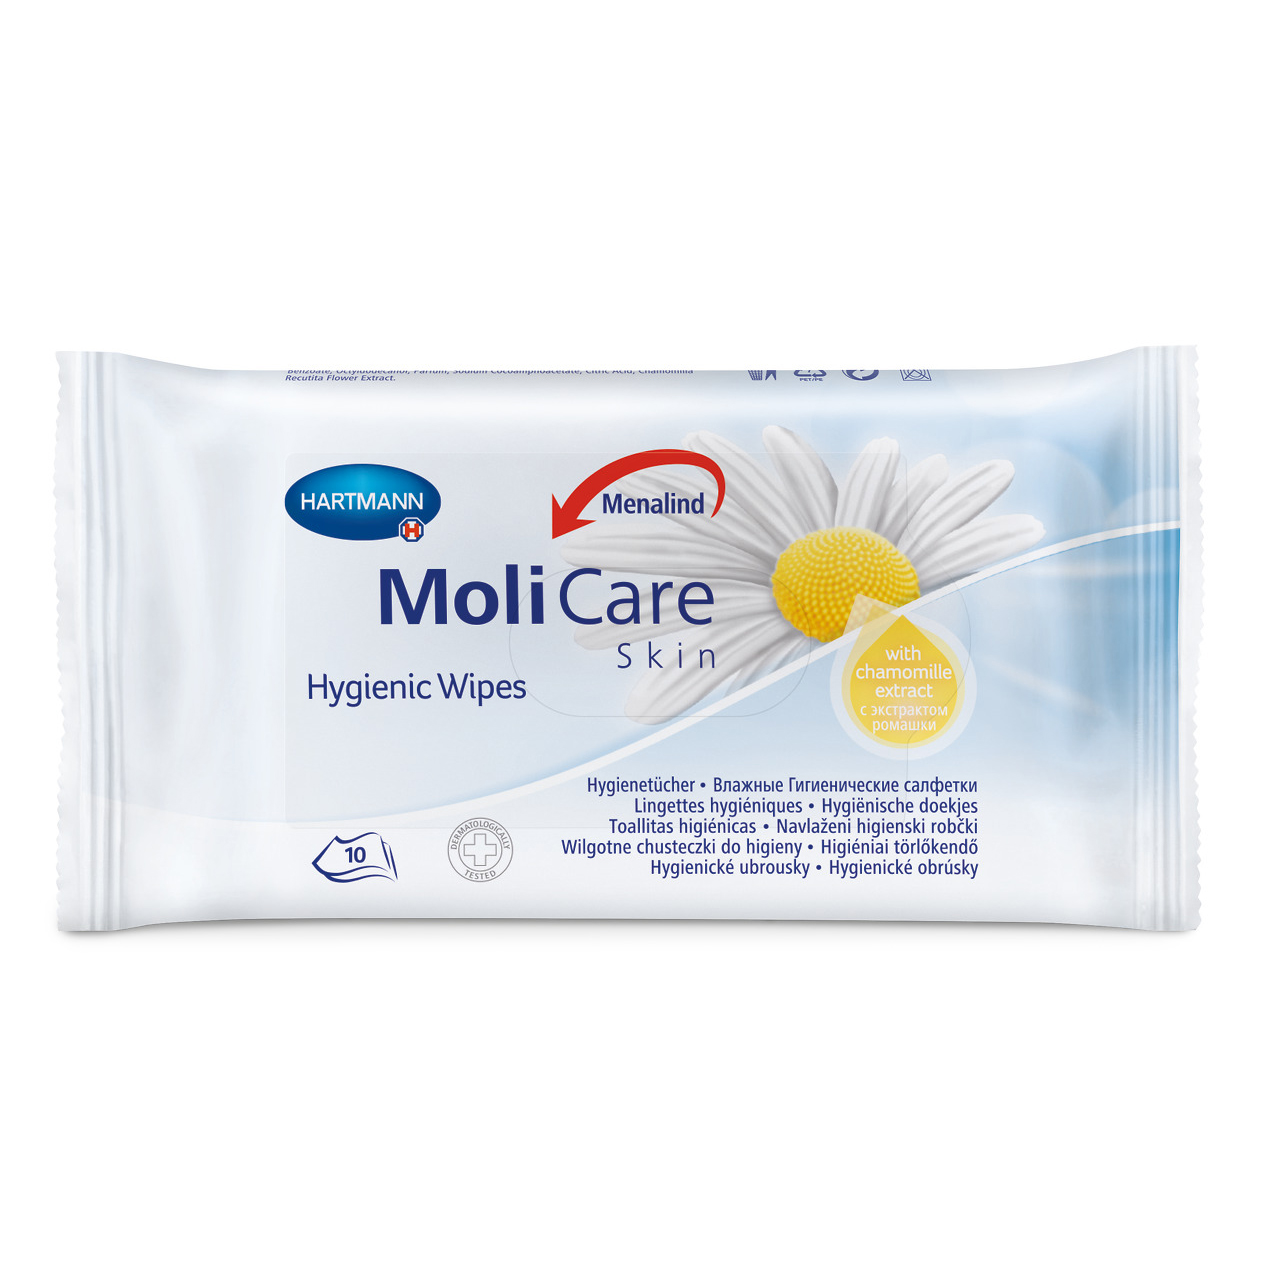 Molicare Skin hygienické ubrousky 10 ks